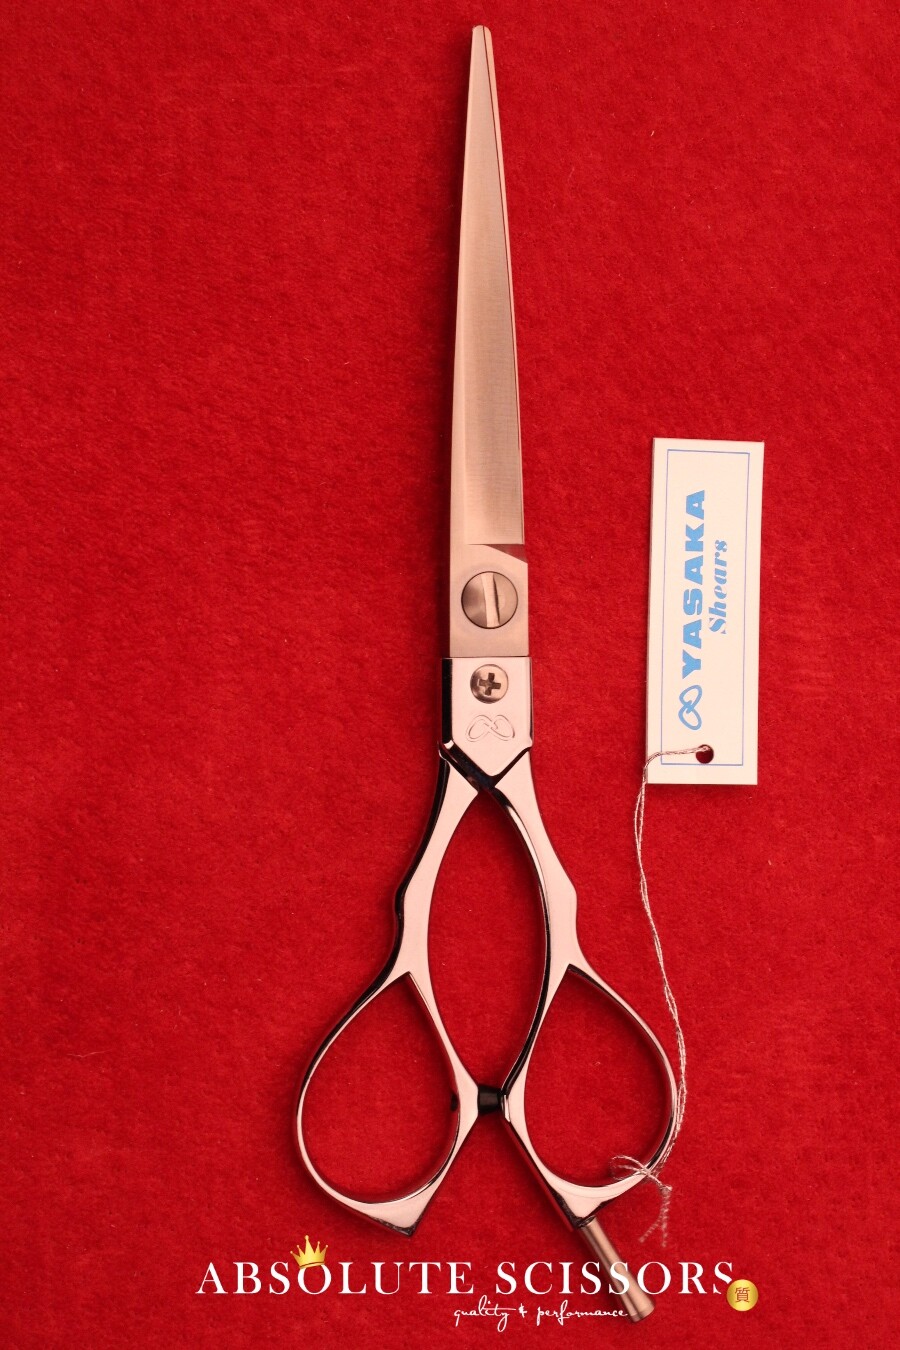 Yasaka scissors Shears L65 6.5 Inches – Japanese Hair Scissors - shears